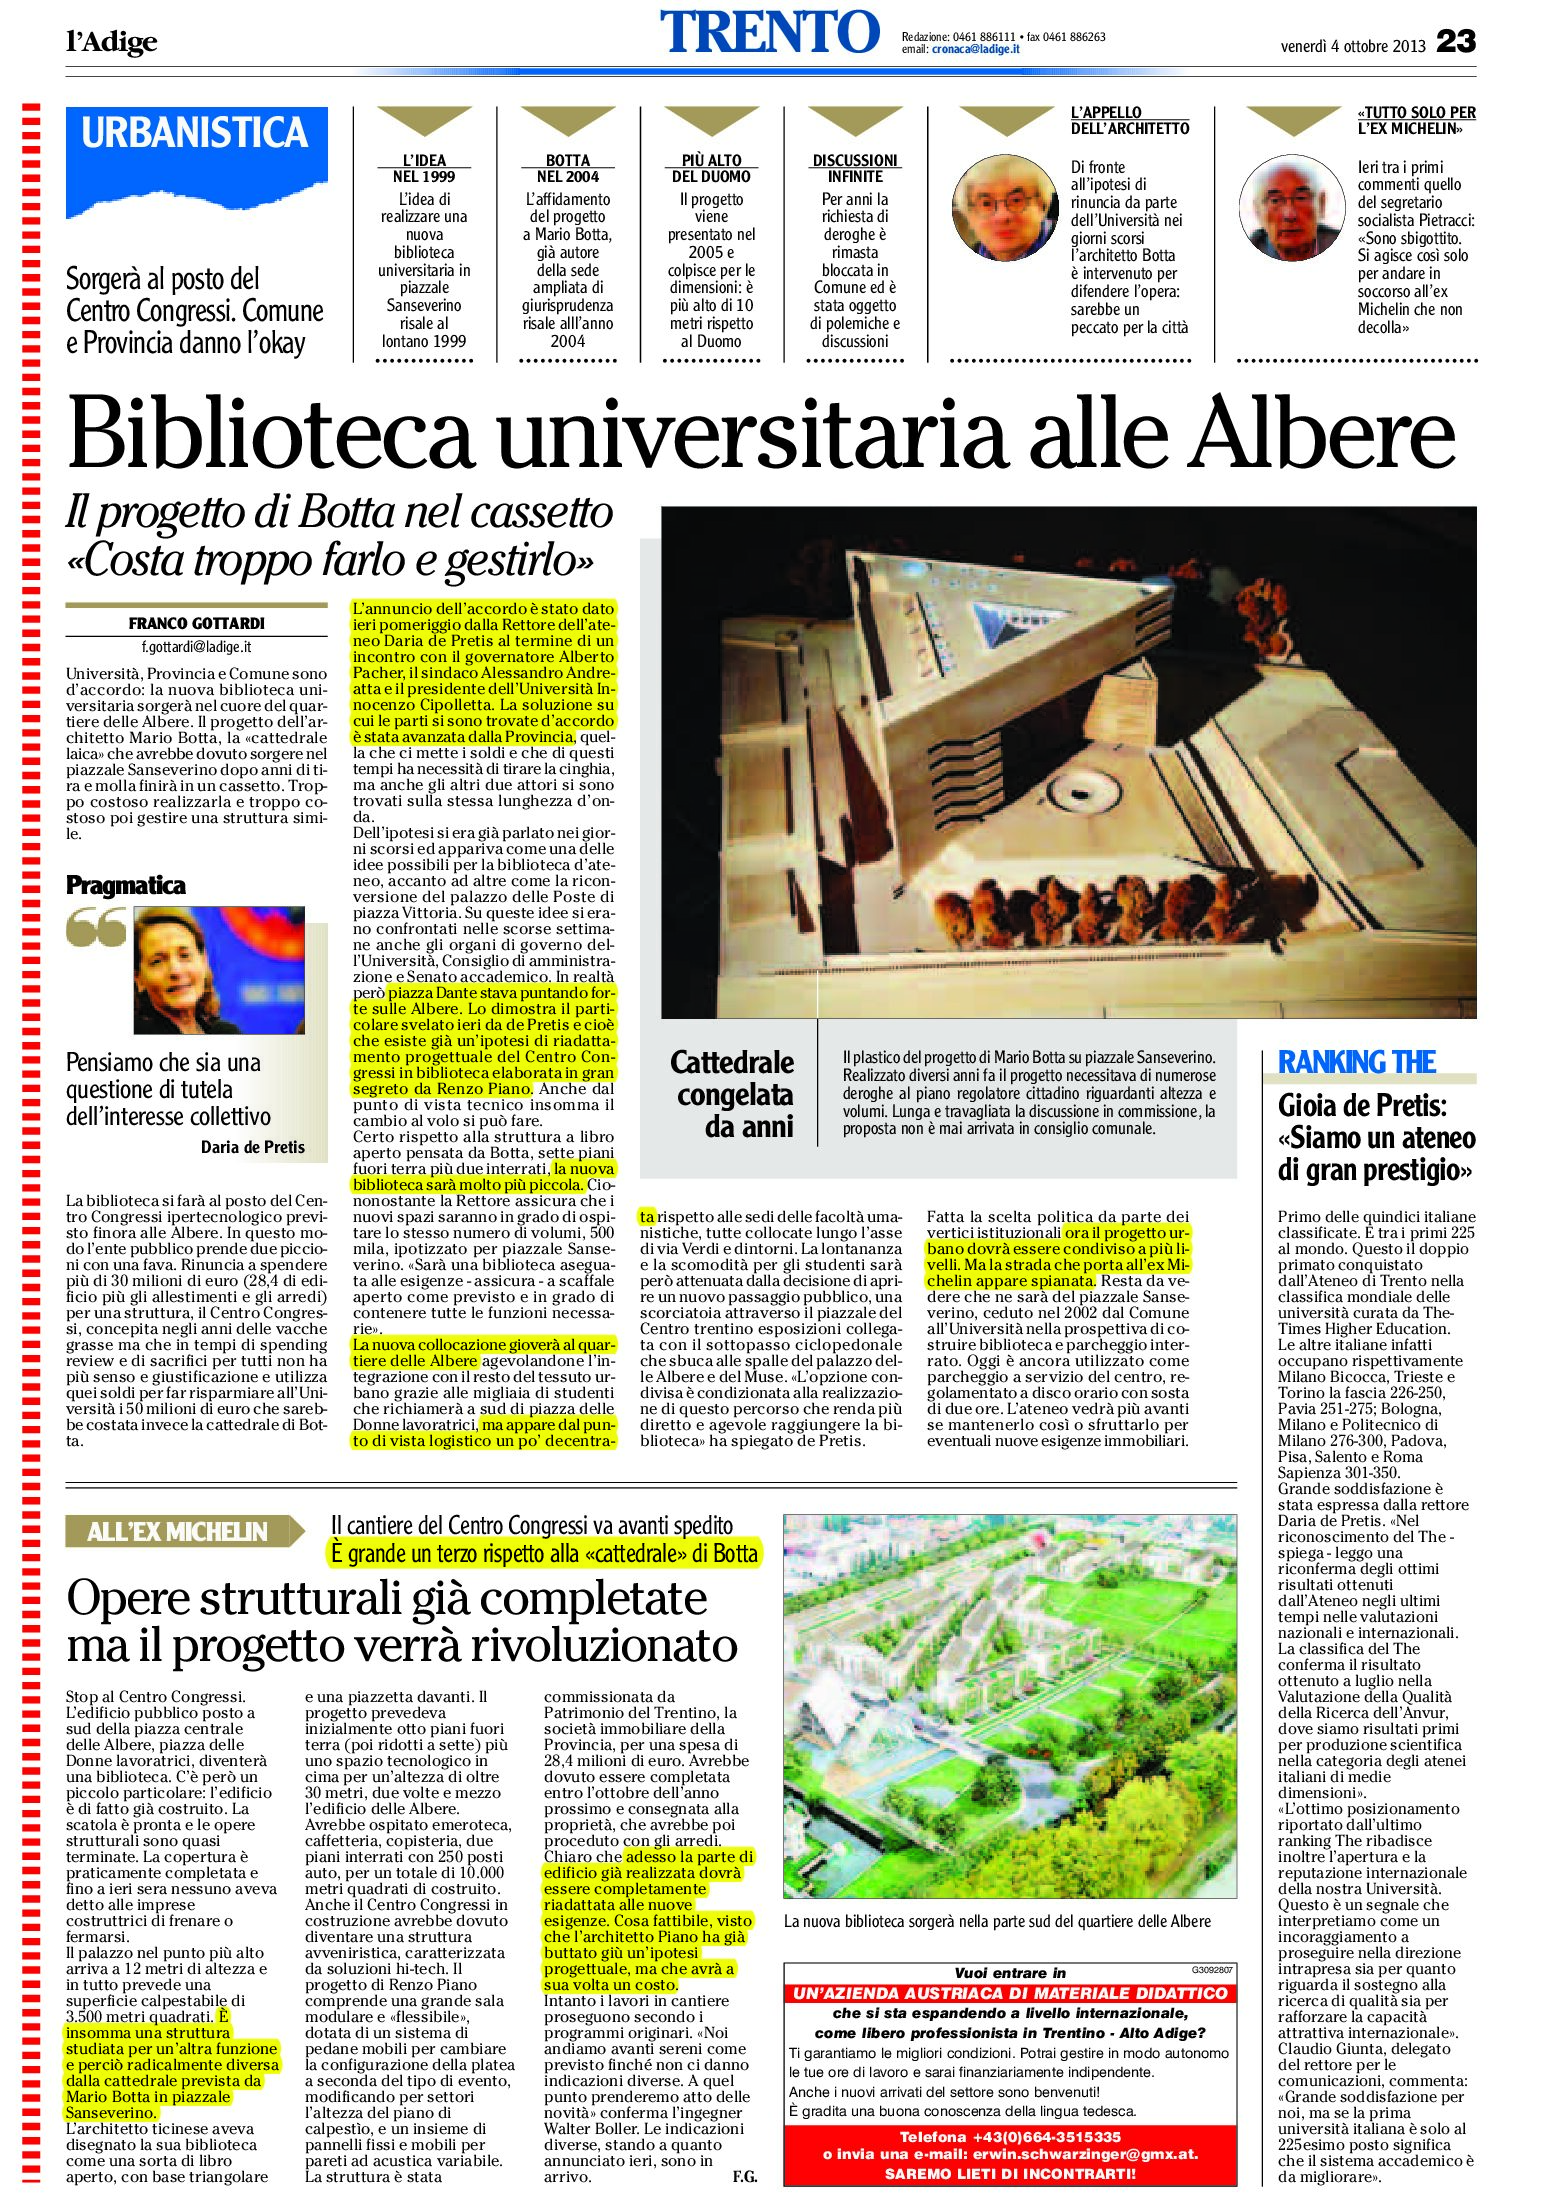 Trento: biblioteca universitaria nel Centro Congressi delle Albere